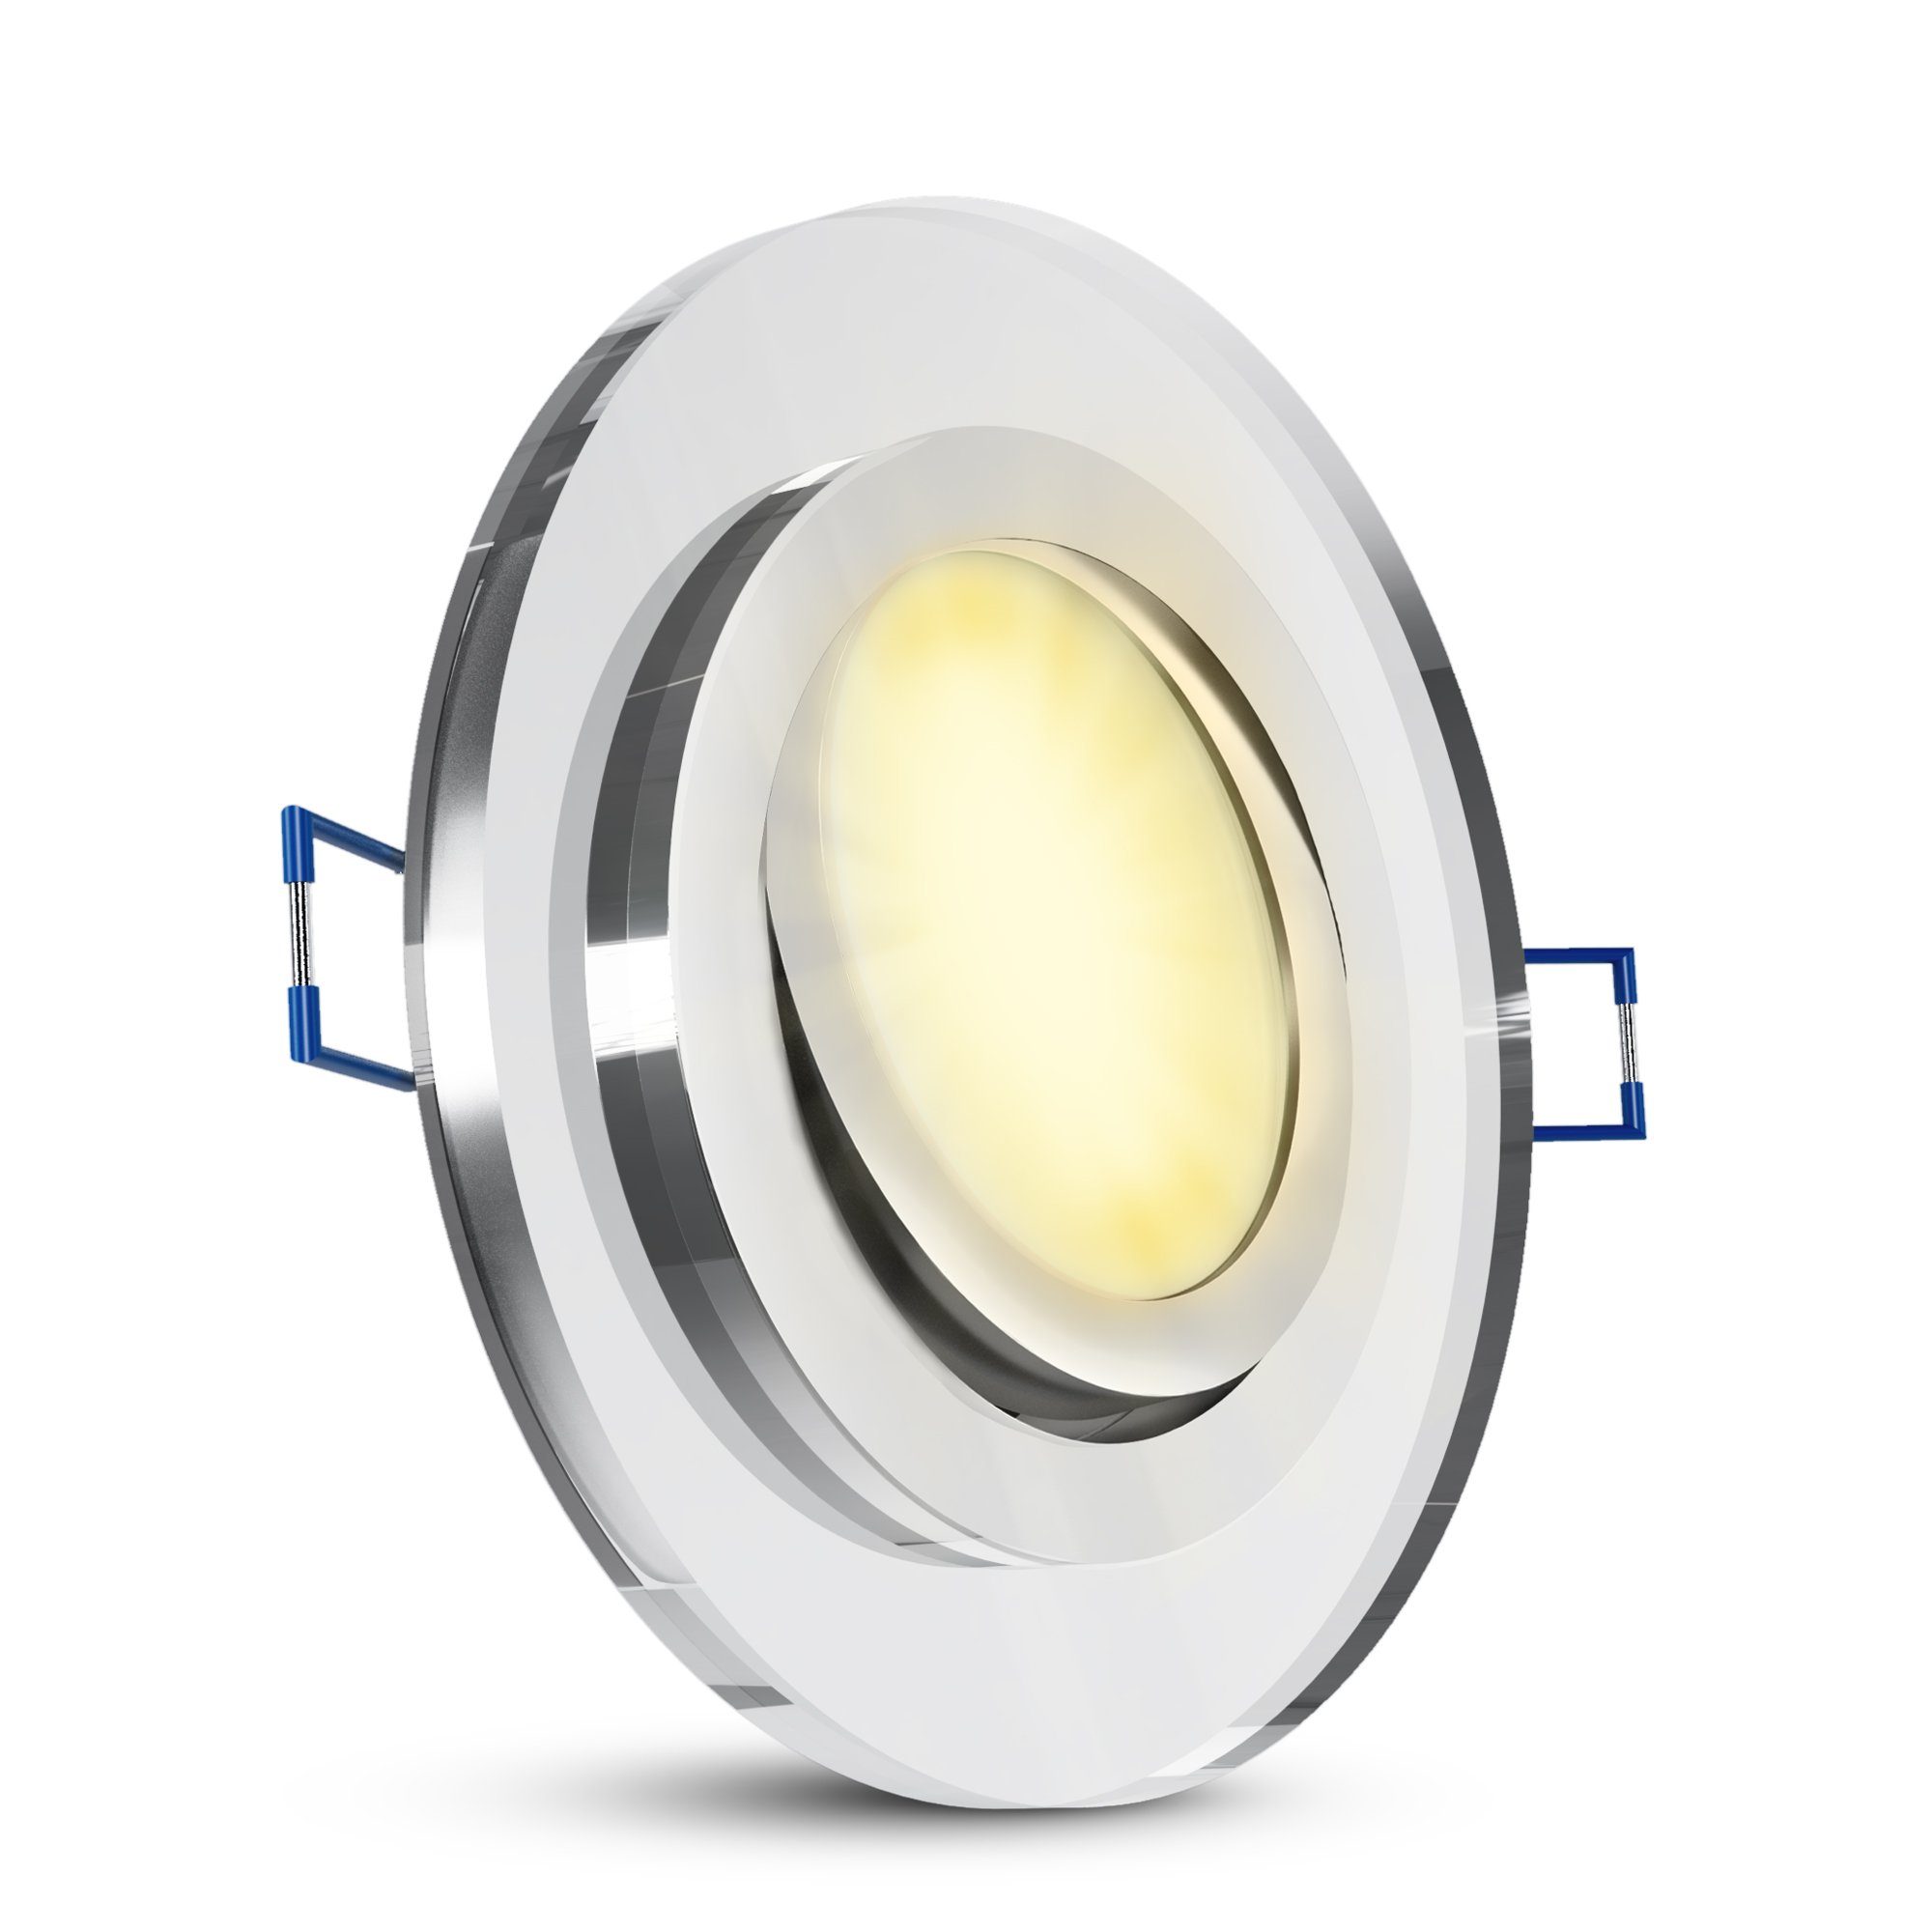 SSC-LUXon LED Einbaustrahler Flache Glas LED Einbauleuchte schwenkbar in klar rund mit LED Modul, Warmweiß